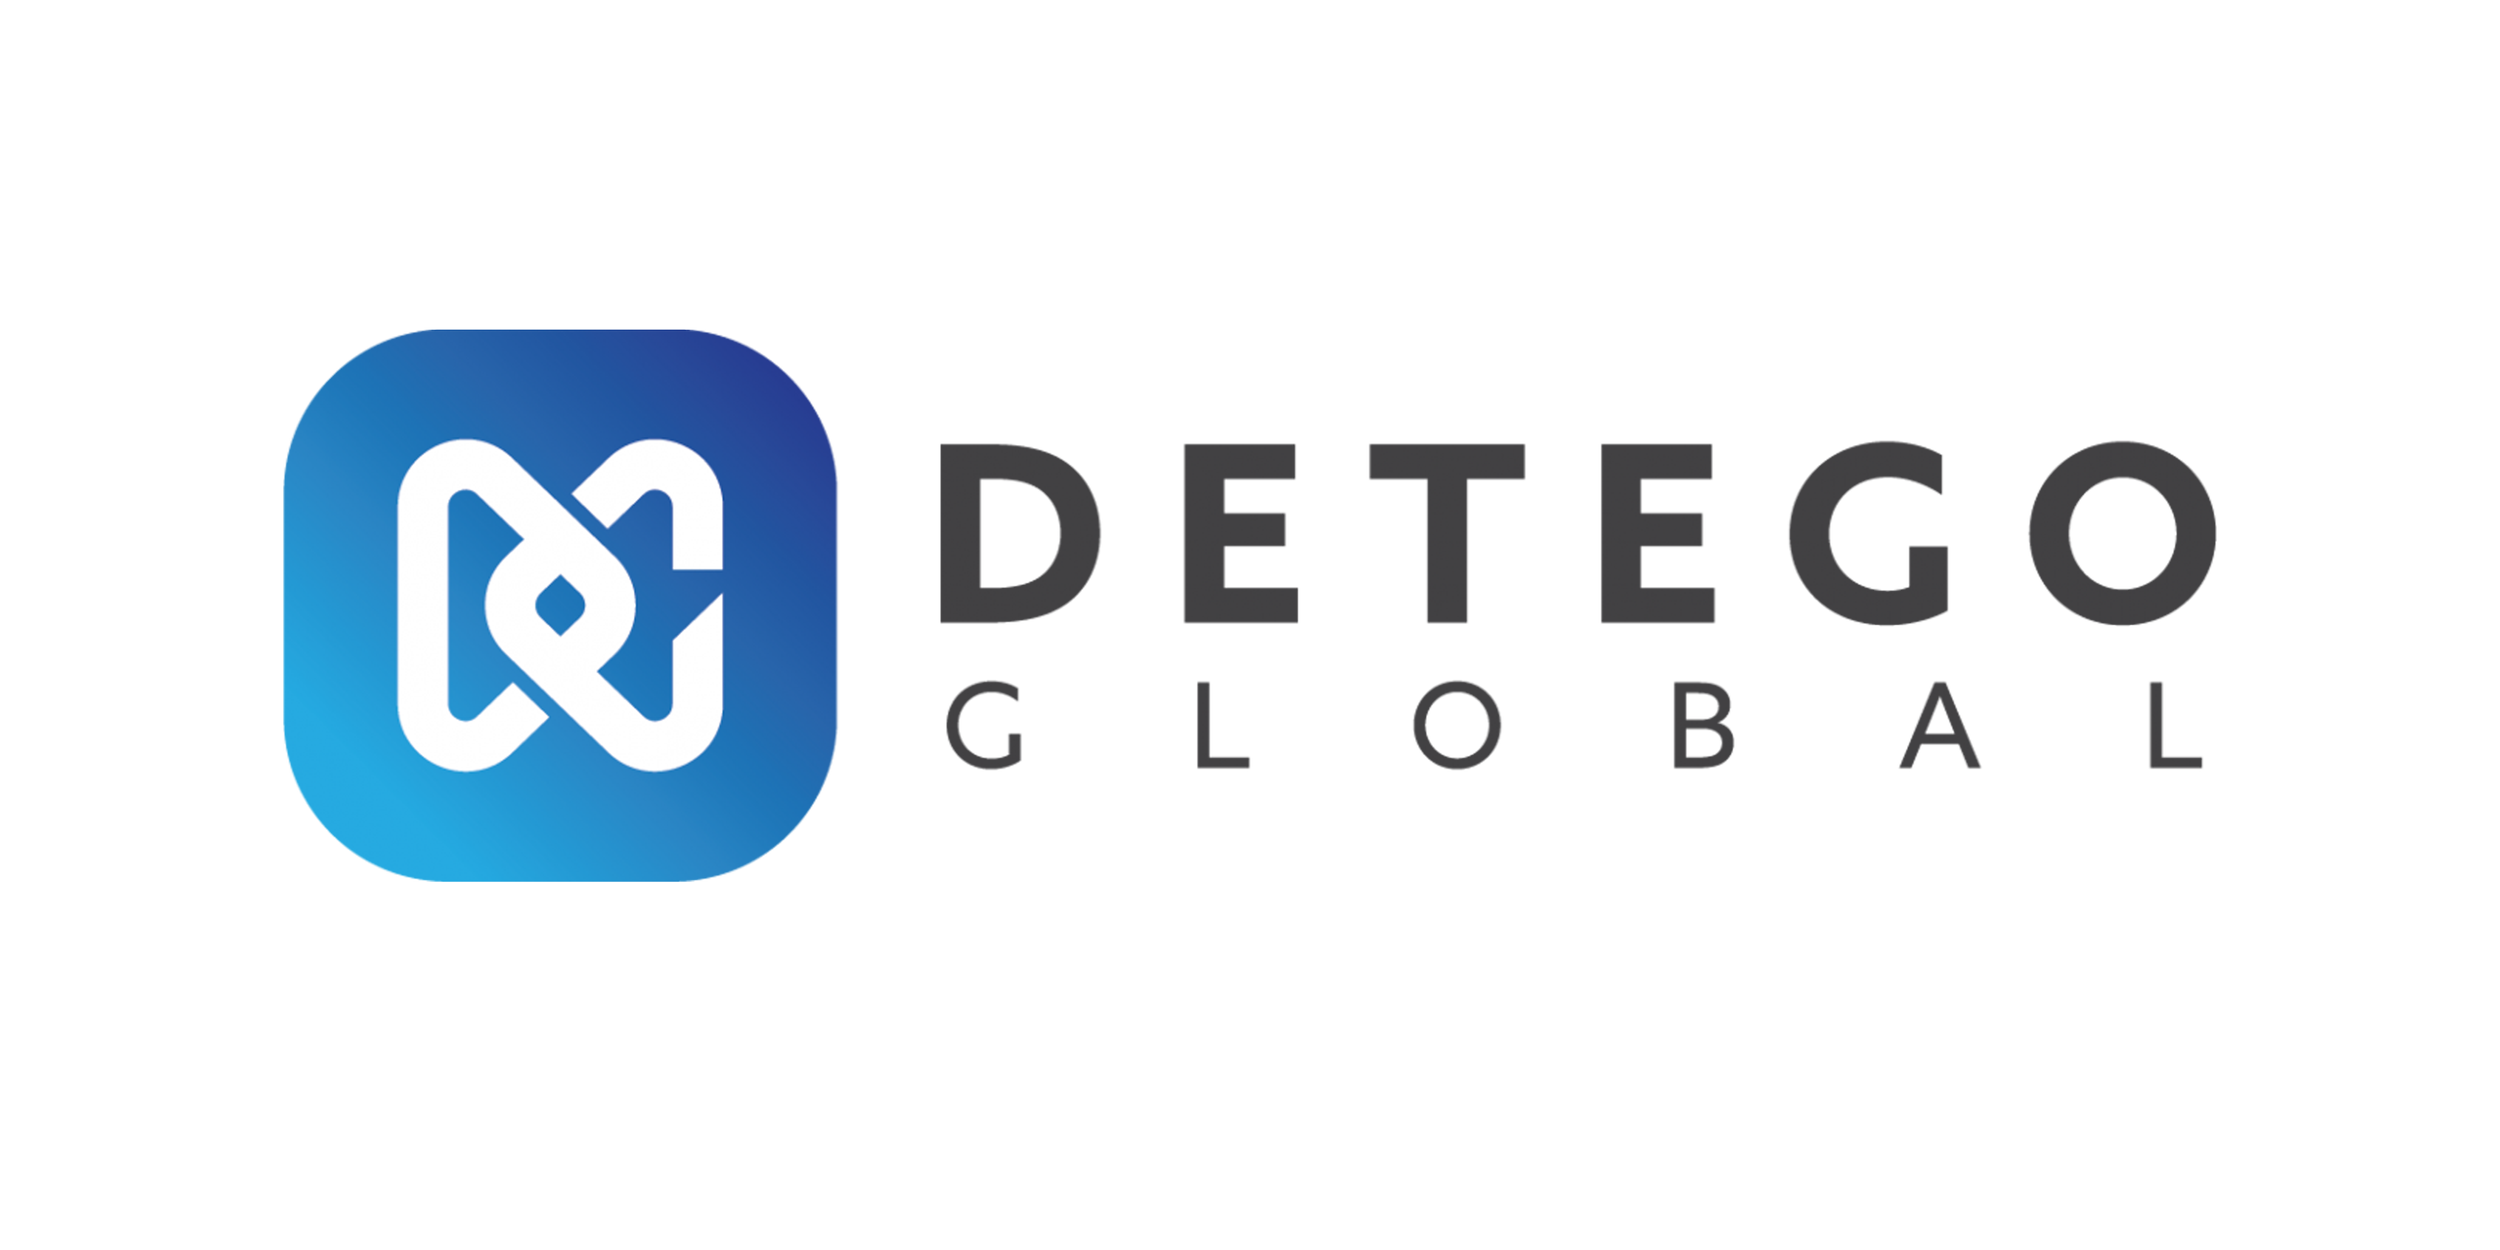 DETEGO, une plateforme complète pour l'investigation numérique, avec triage, copie ultra rapide, analyse disque dur et mobile